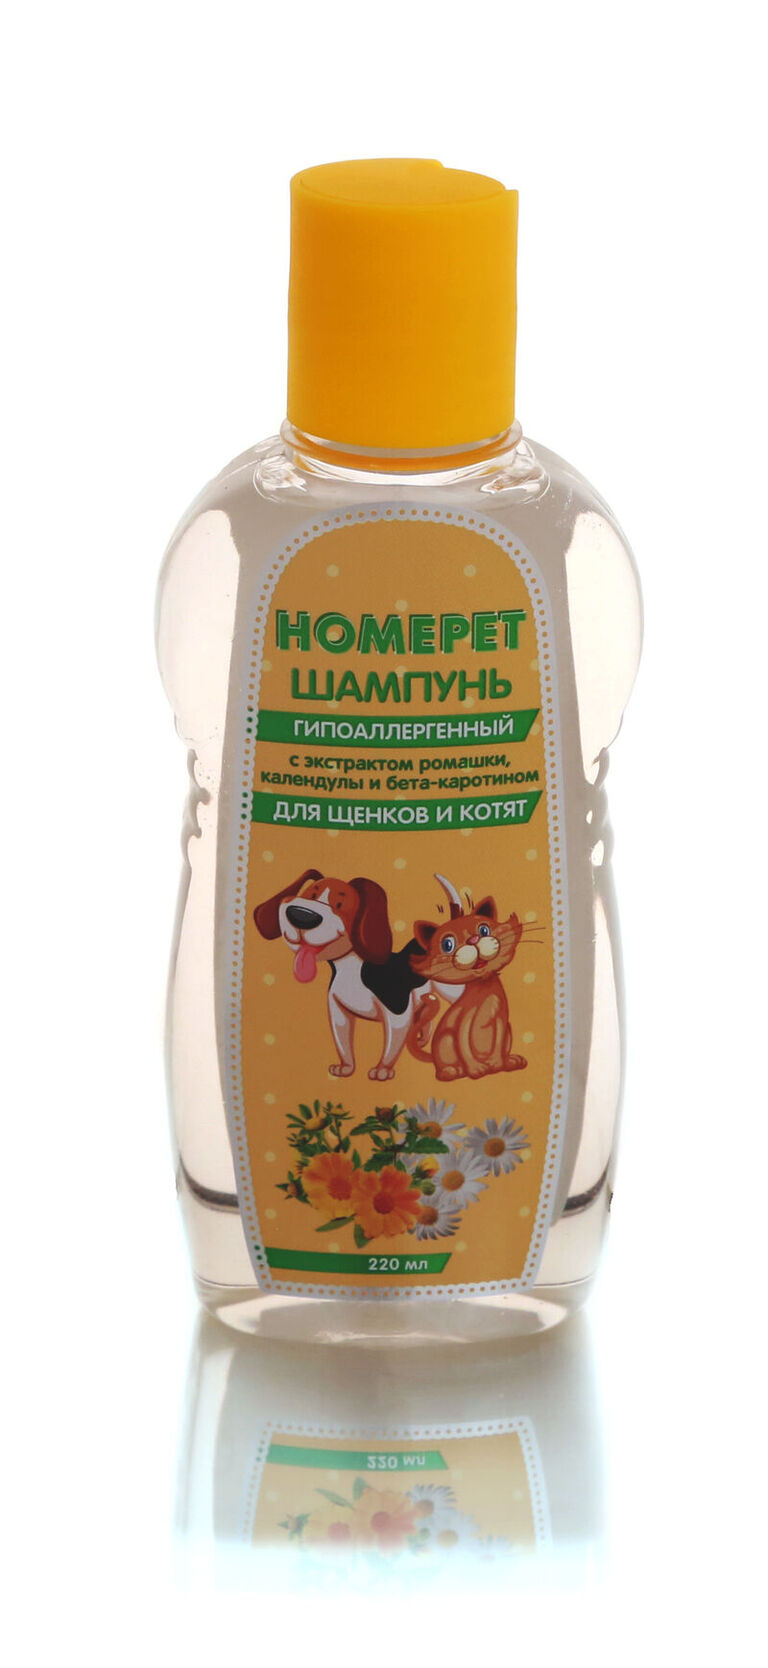 HOMEРЕT 220 мл шампунь для щенков и котят гипоаллергенный  с экстрактом ромашки, календулы и бета-каротином